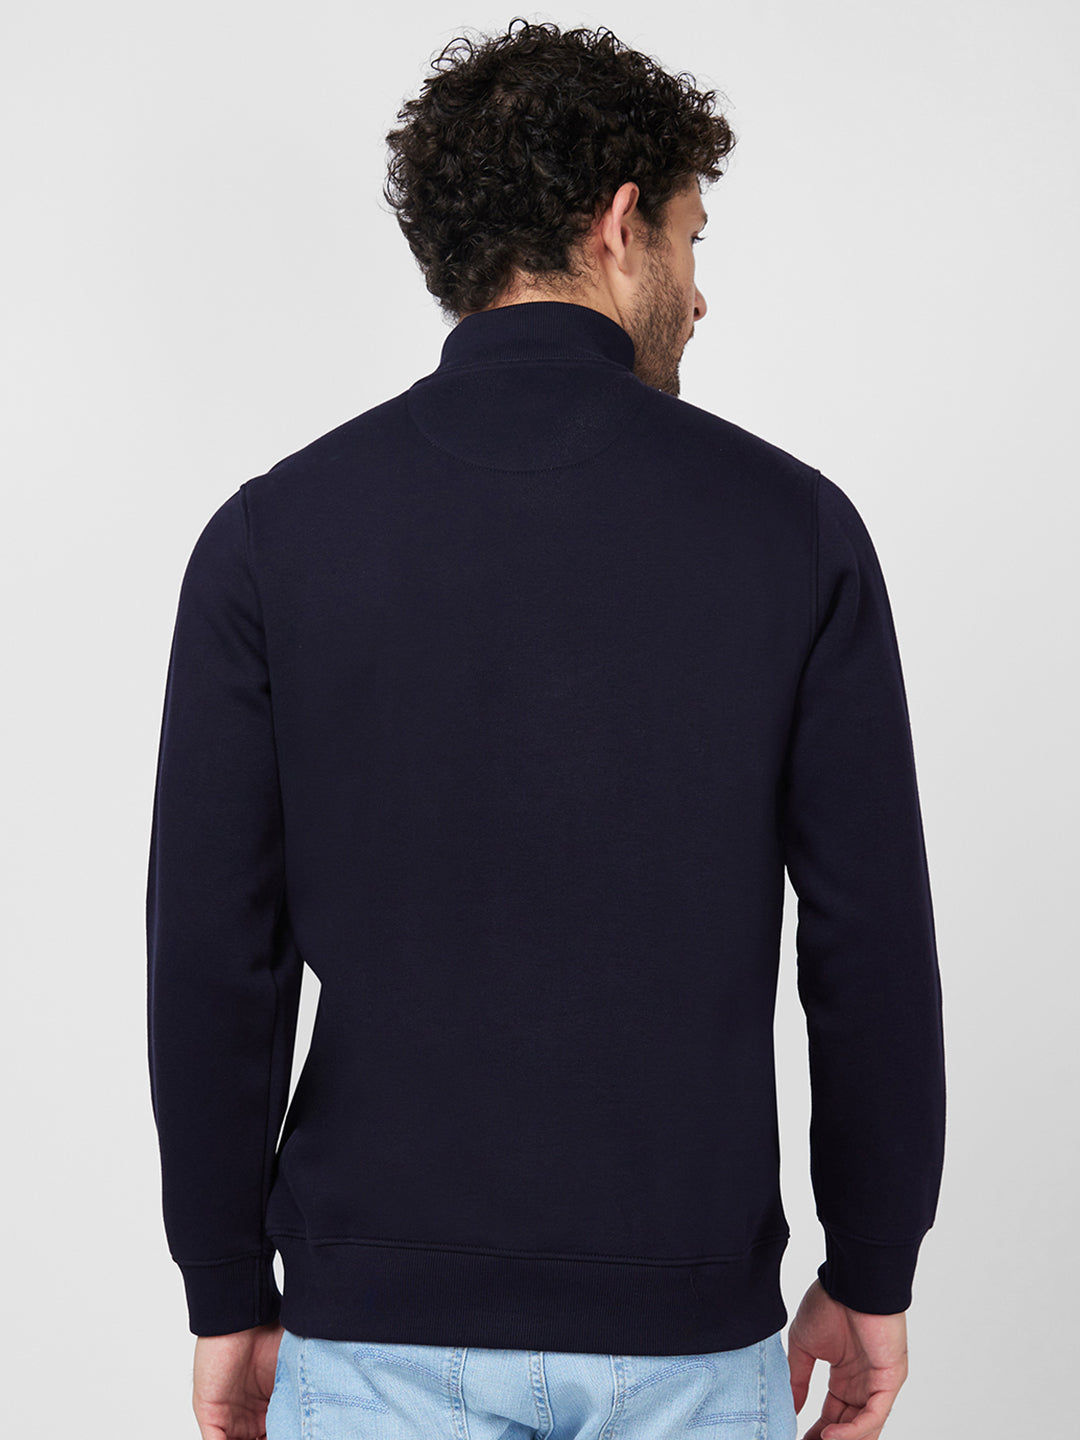 Spykar High Neck Full Sleeve Blue Sweatshirt For Men